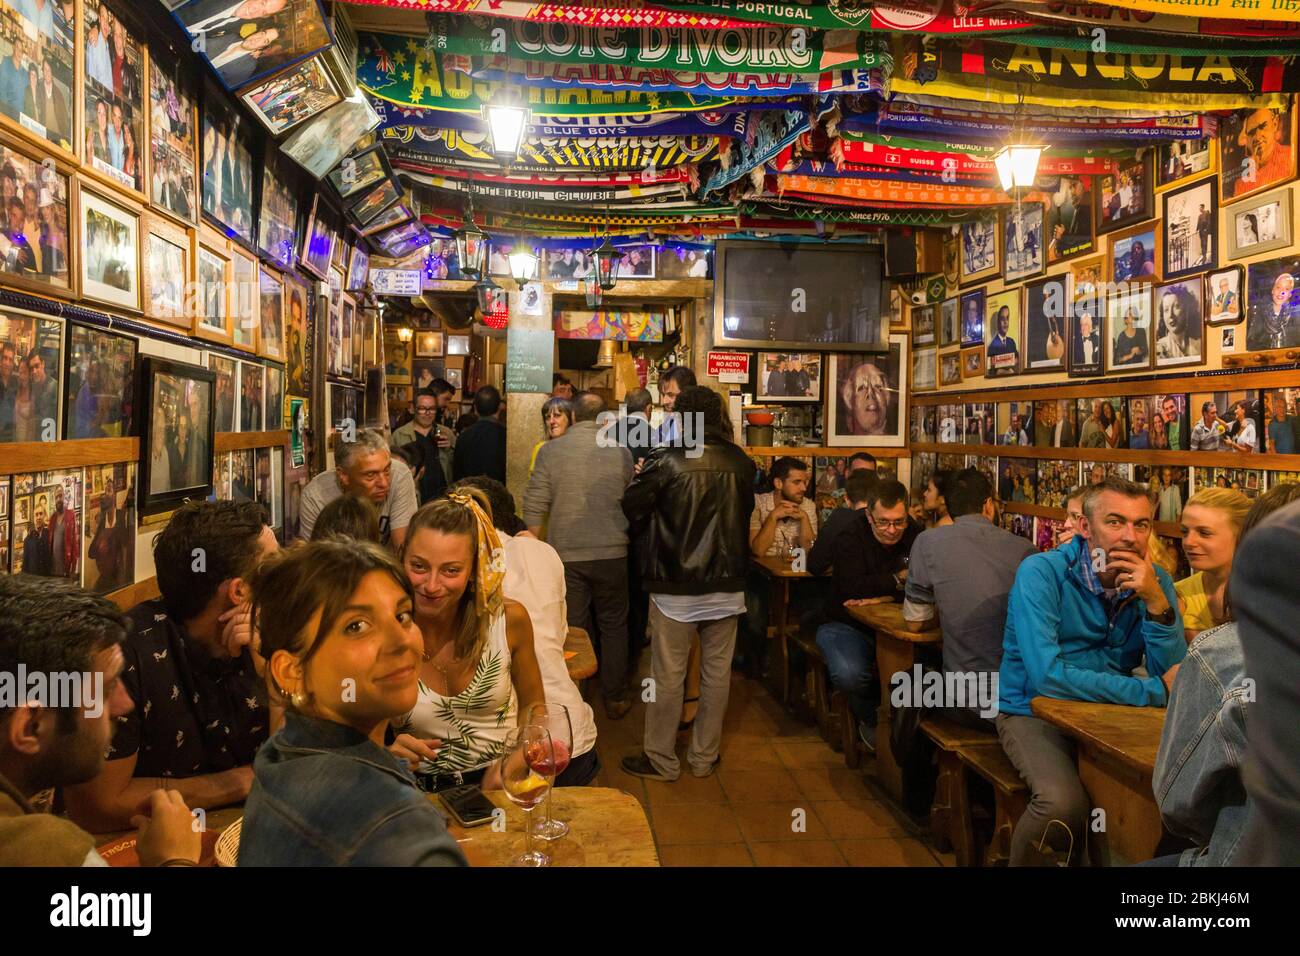 Portugal, Lissabon, Bairro Alto, Bairro Alto ist einer der belebtesten Gegenden von Lissabon in der Nacht mit einer hohen Konzentration von Bars und Restaurants, überfüllten Innenraum einer Fado-Bar Stockfoto